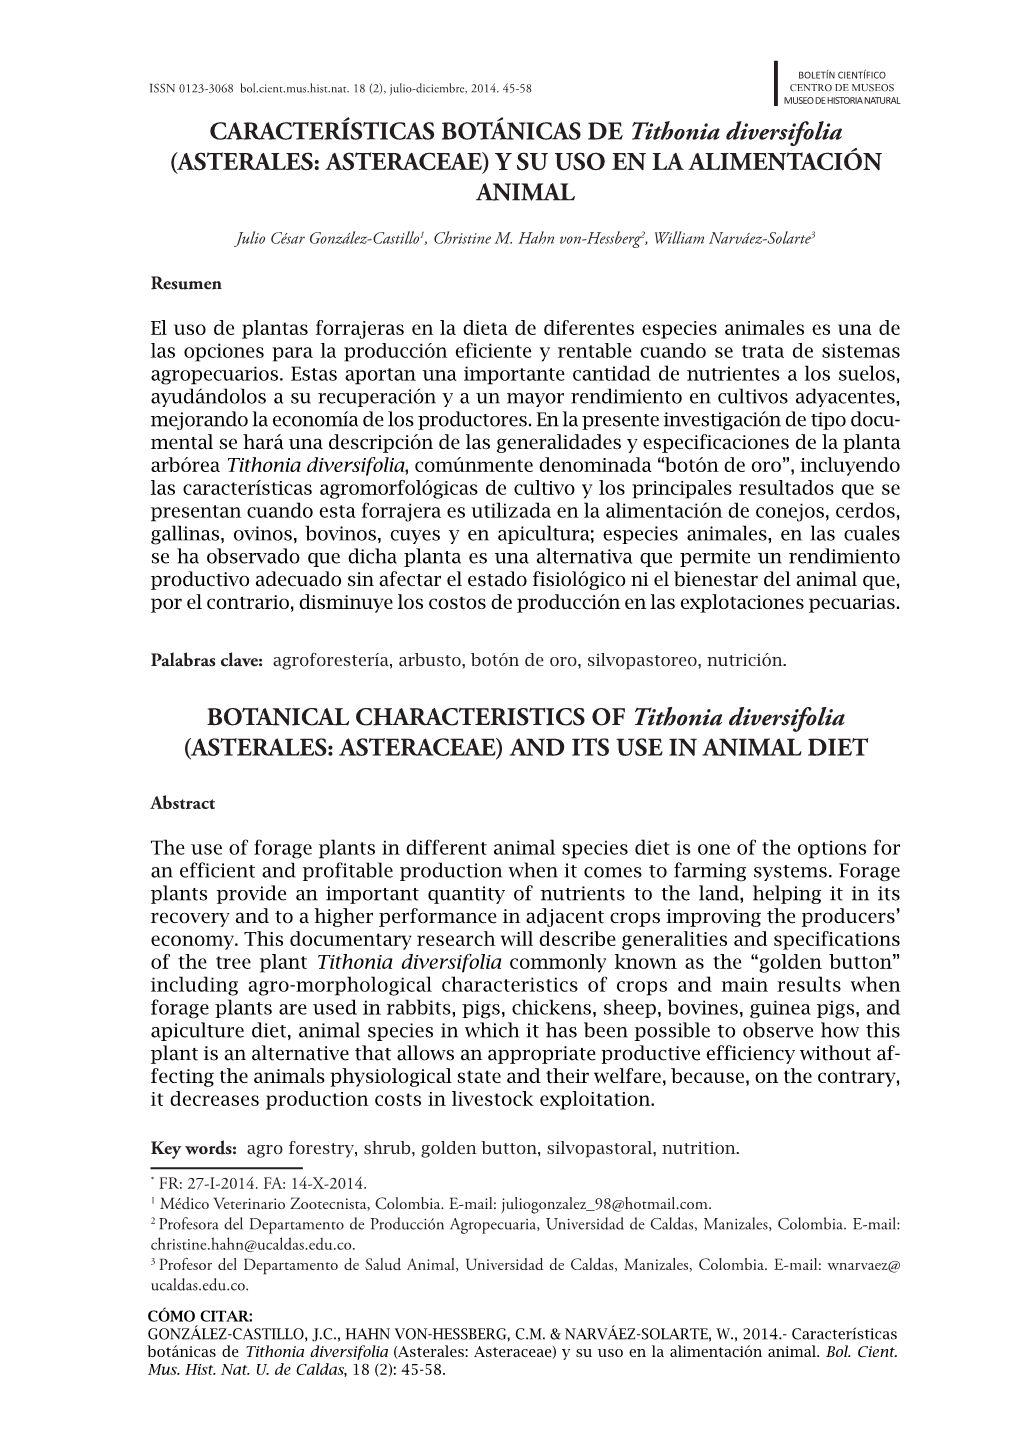 CARACTERÍSTICAS BOTÁNICAS DE Tithonia Diversifolia (ASTERALES: ASTERACEAE) Y SU USO EN LA ALIMENTACIÓN ANIMAL